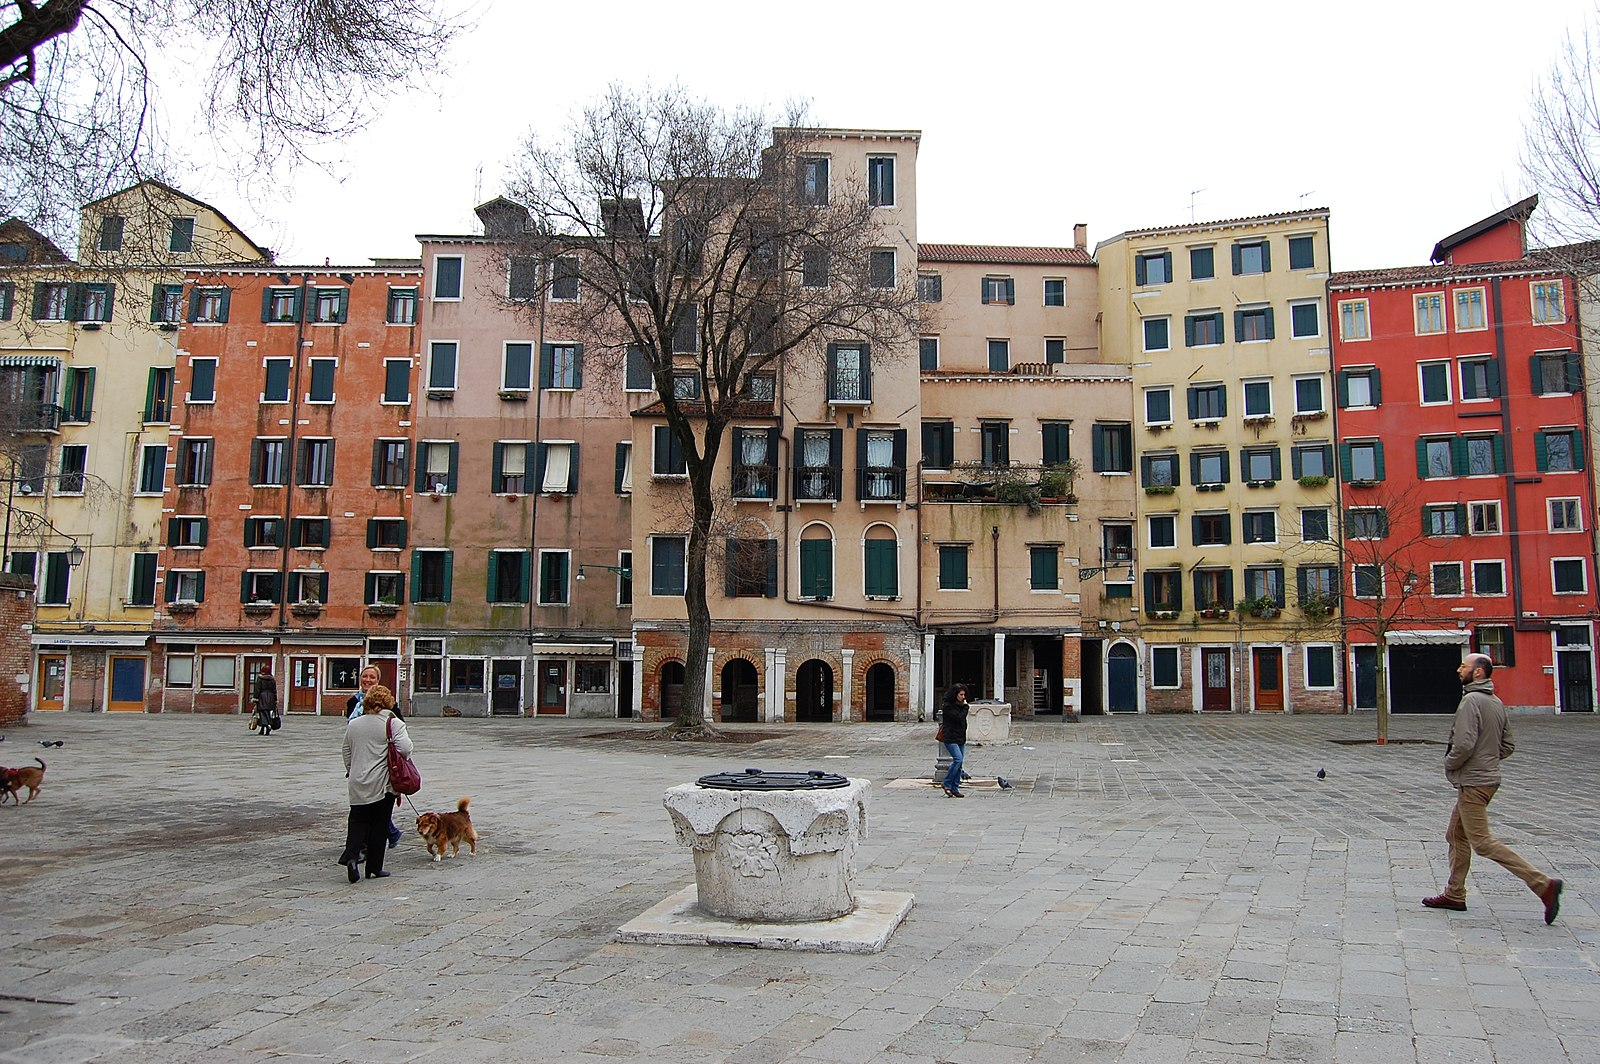 ghetto di venezia